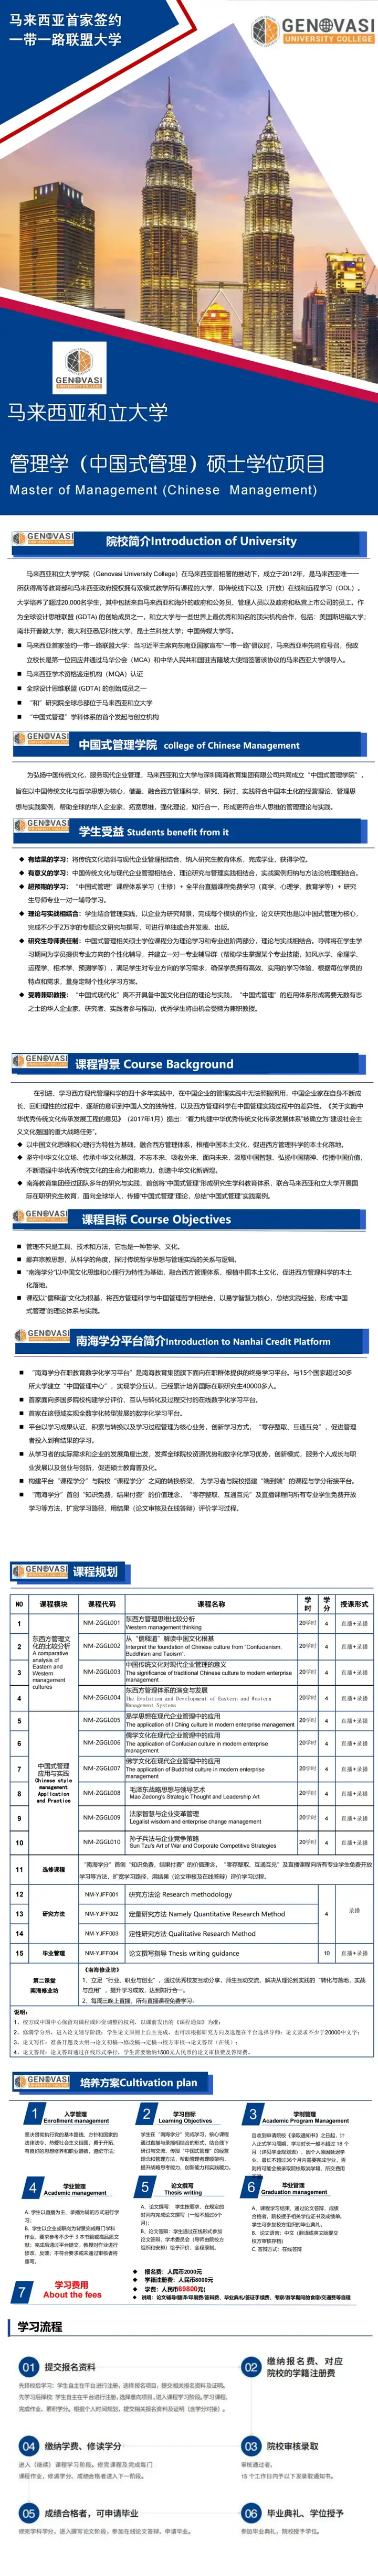 马来西亚和立大学管理学（中国式管理）硕士学位课程简章-1